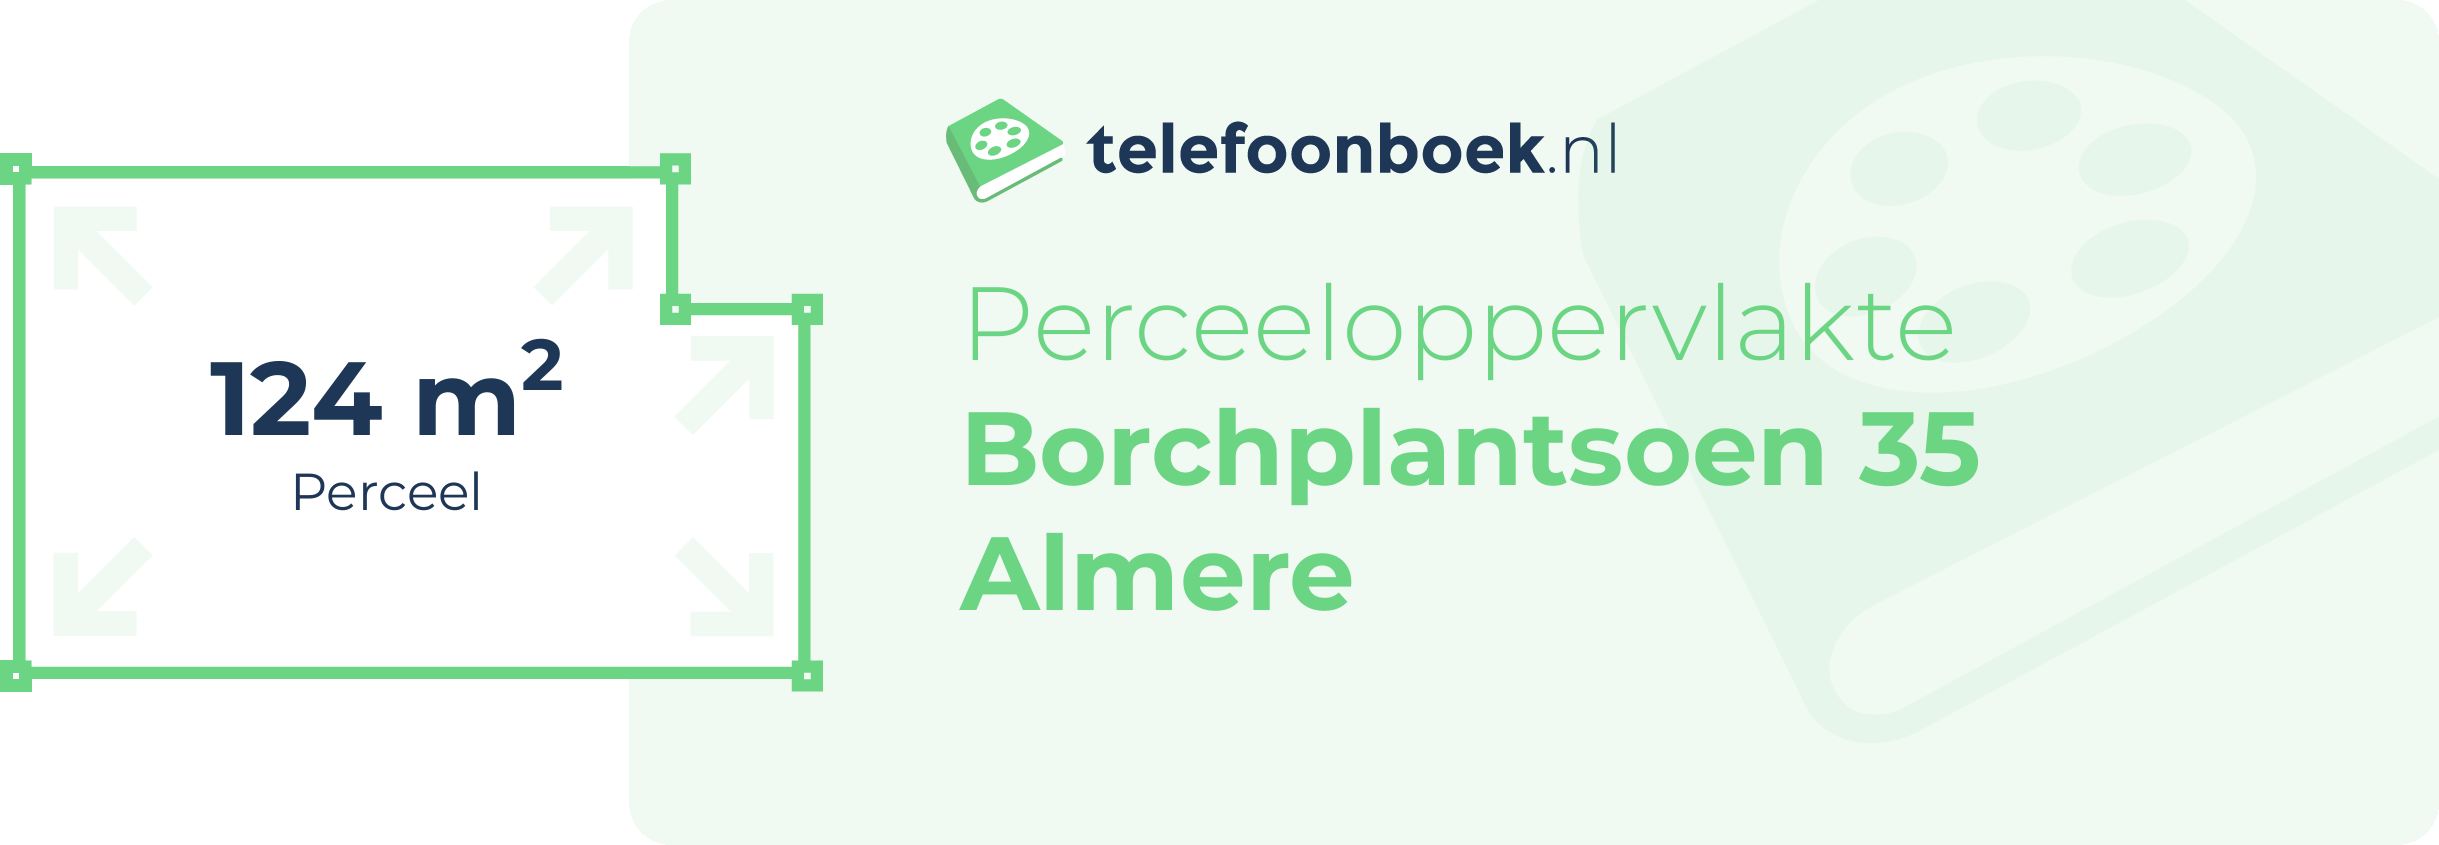 Perceeloppervlakte Borchplantsoen 35 Almere